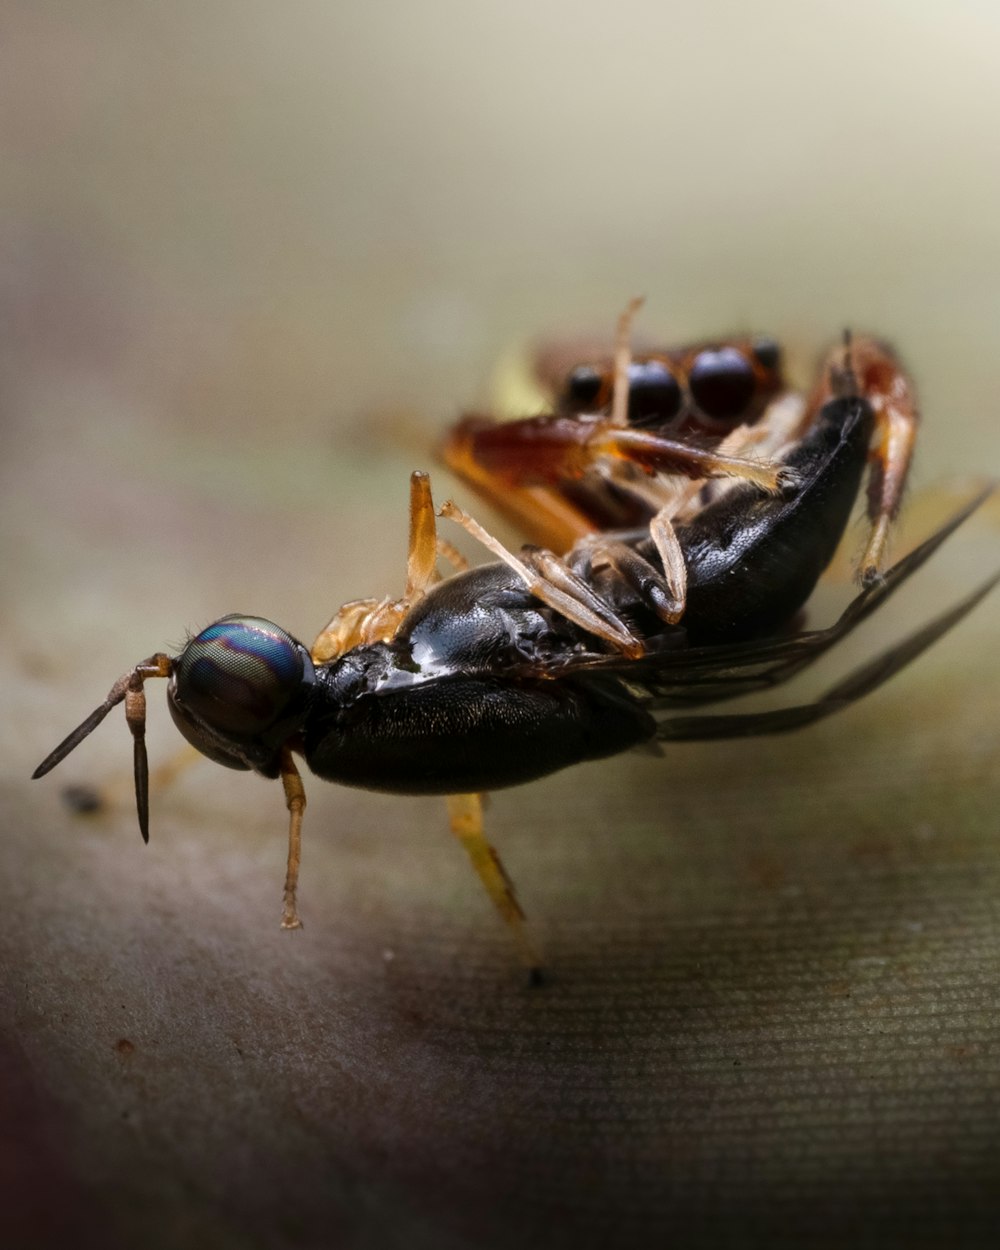 Nahaufnahme eines Käfers auf einer Oberfläche